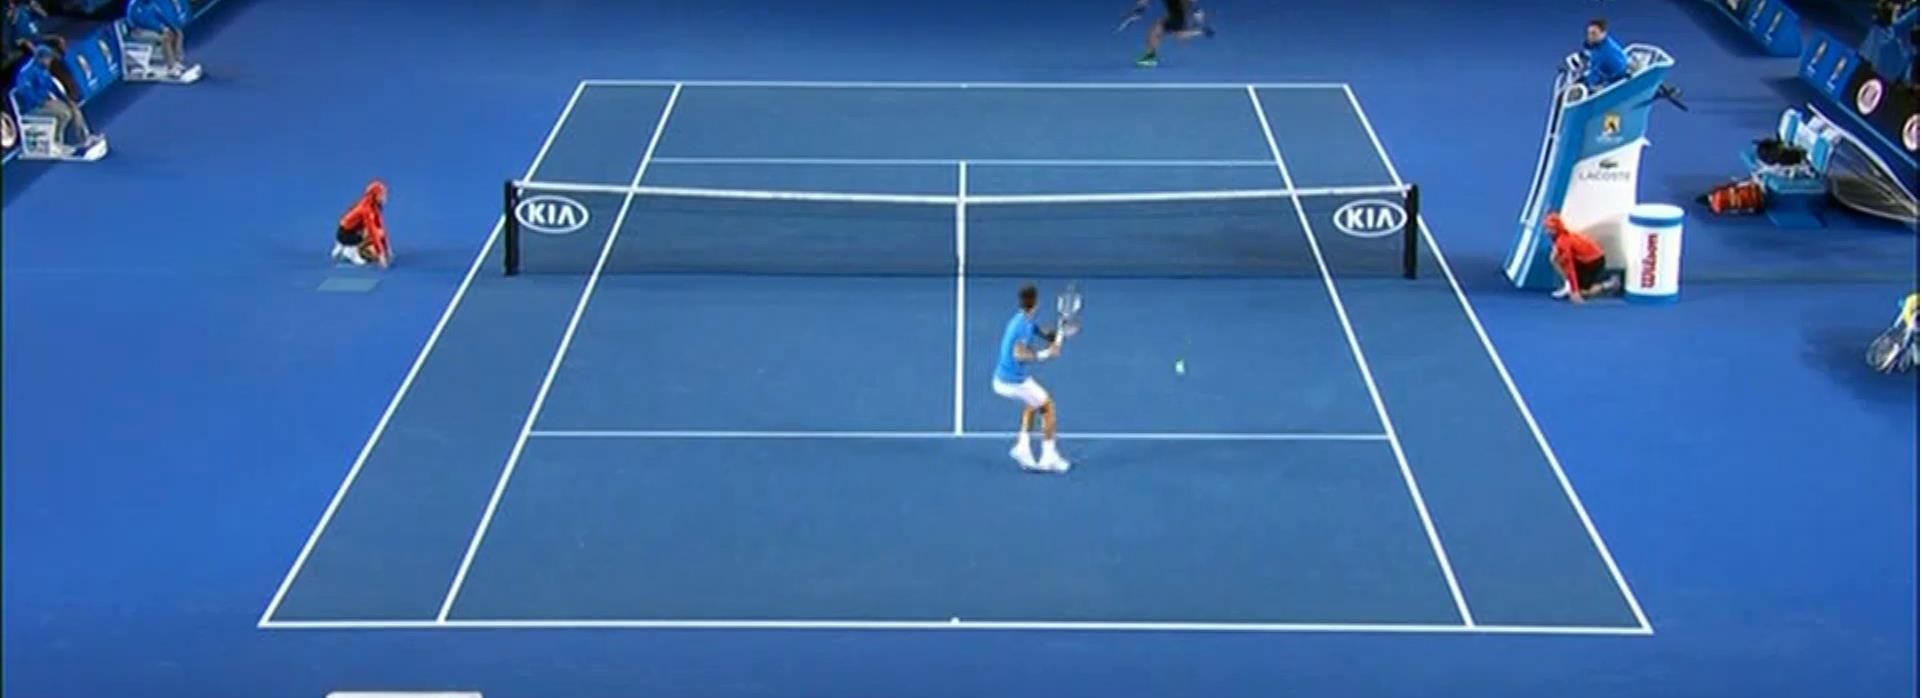 Теннис. Джокович - самый титулованный теннисист Australian Open